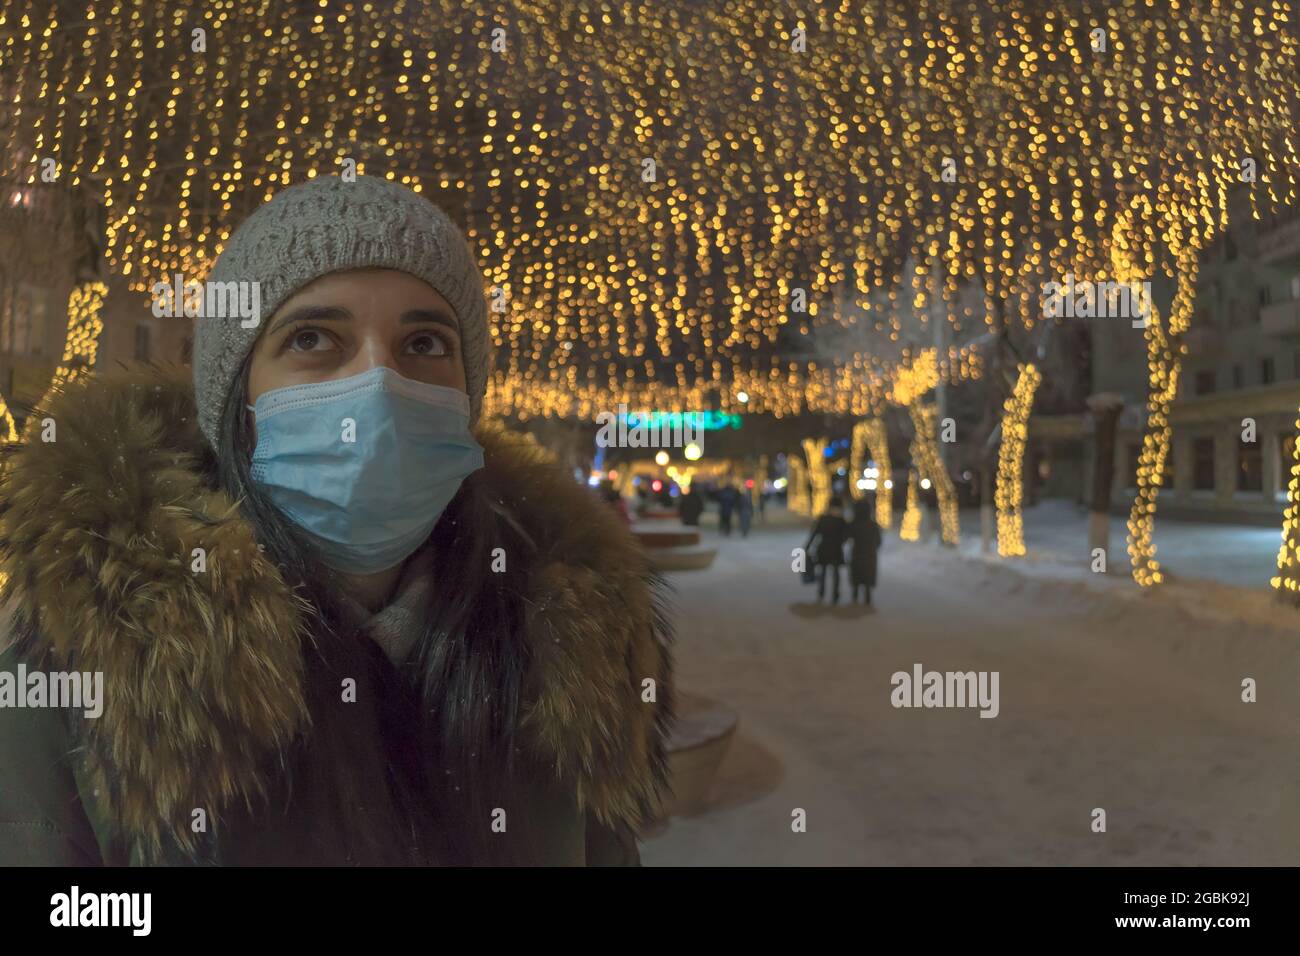 Ein Mädchen in einer medizinischen Maske auf der Neujahrsstraße. Eine Frau in einer Gesichtsmaske steht auf einer Straße mit Geschäften, die für Weihnachten und Neujahr dekoriert sind. Urlaubsdauer Stockfoto